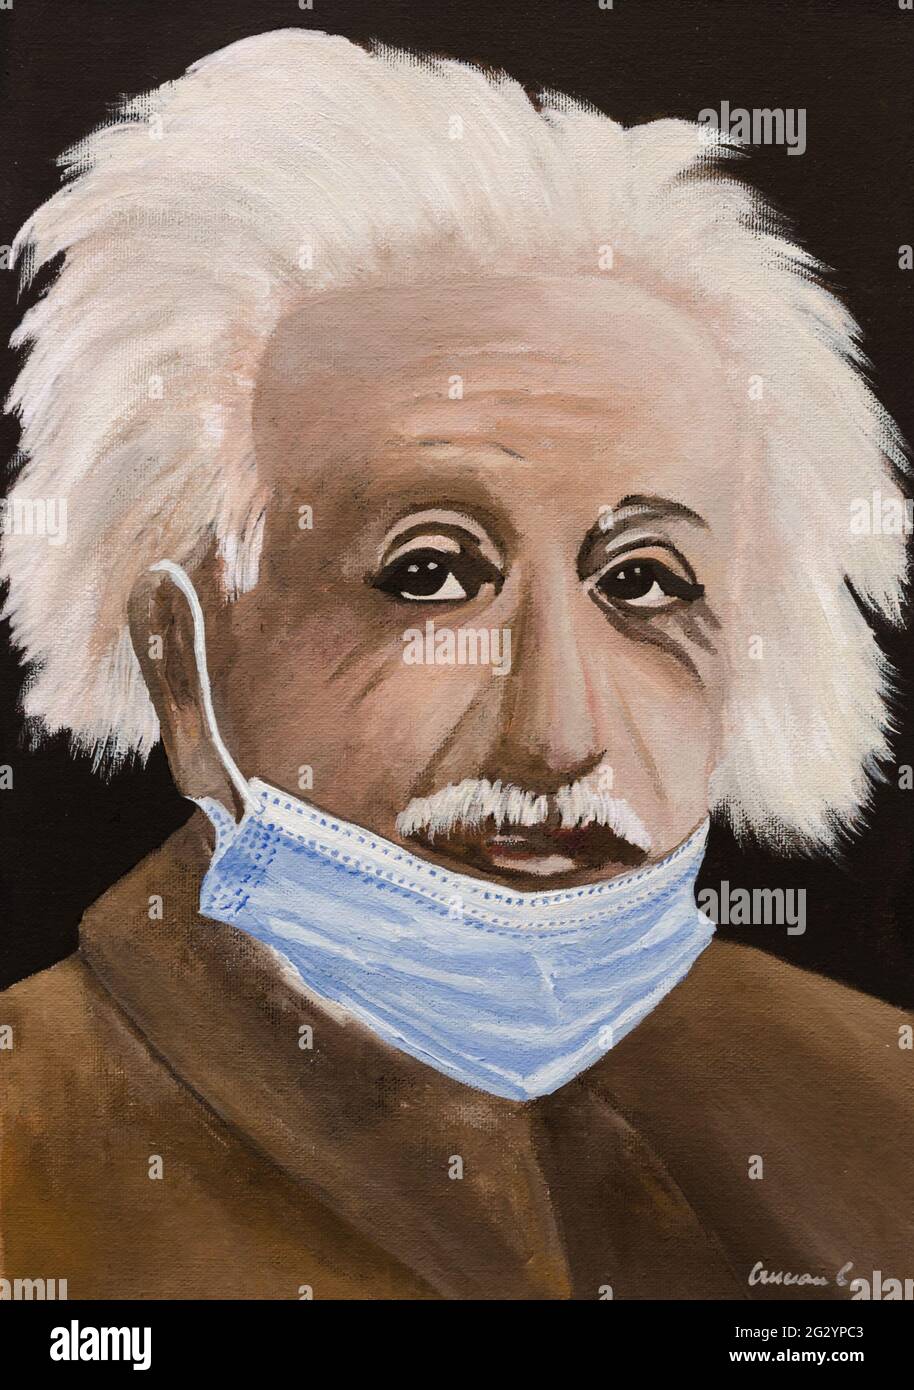 Albert Einstein portrait Stock Photo